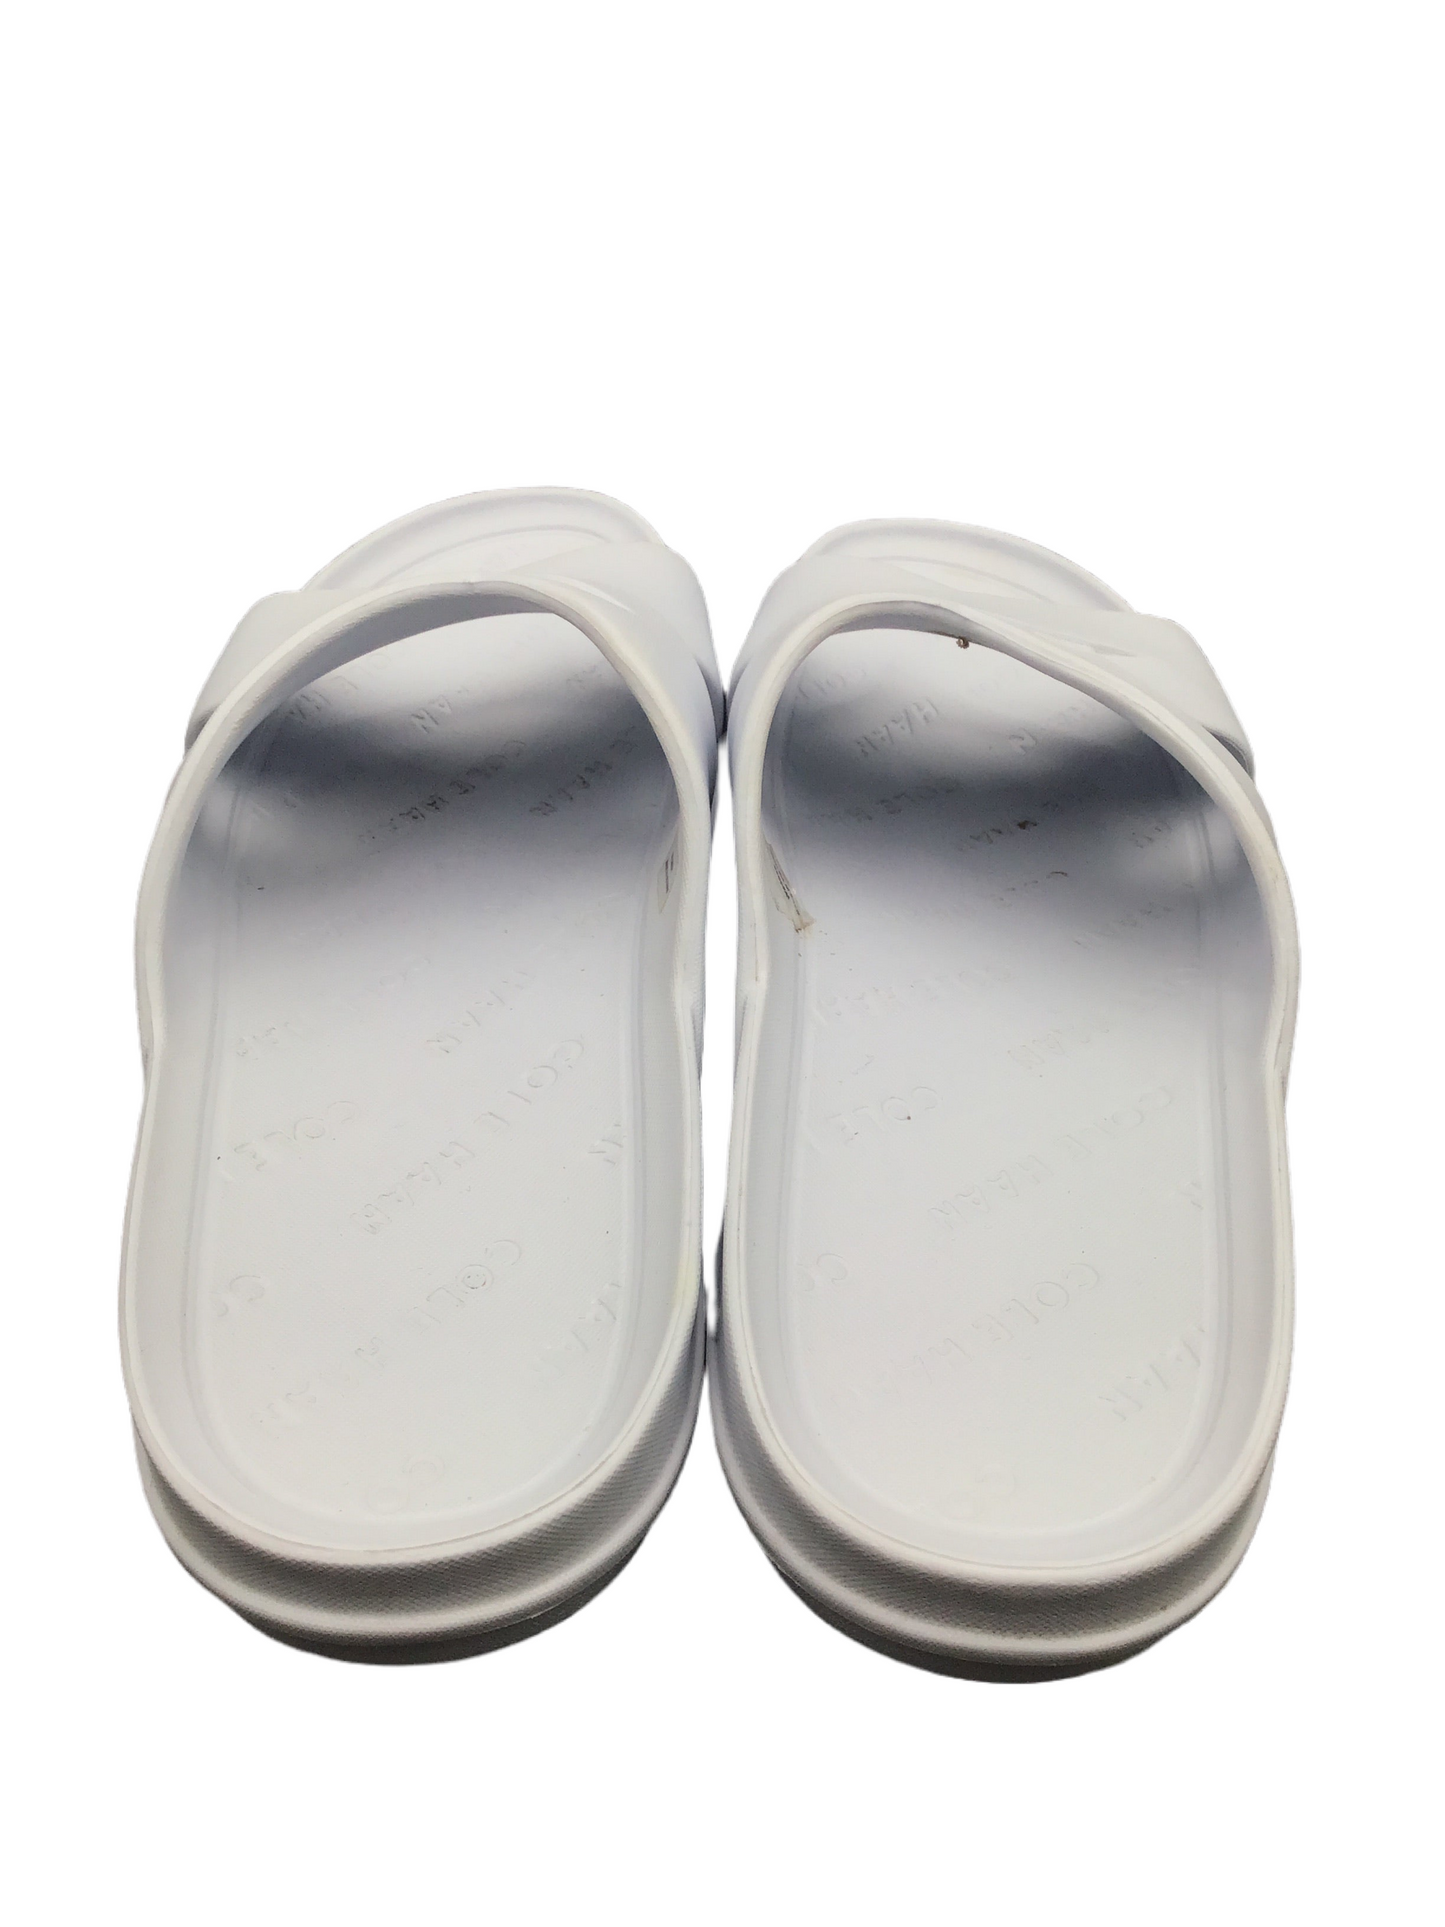 White Sandals Designer Cole-haan, Size 10